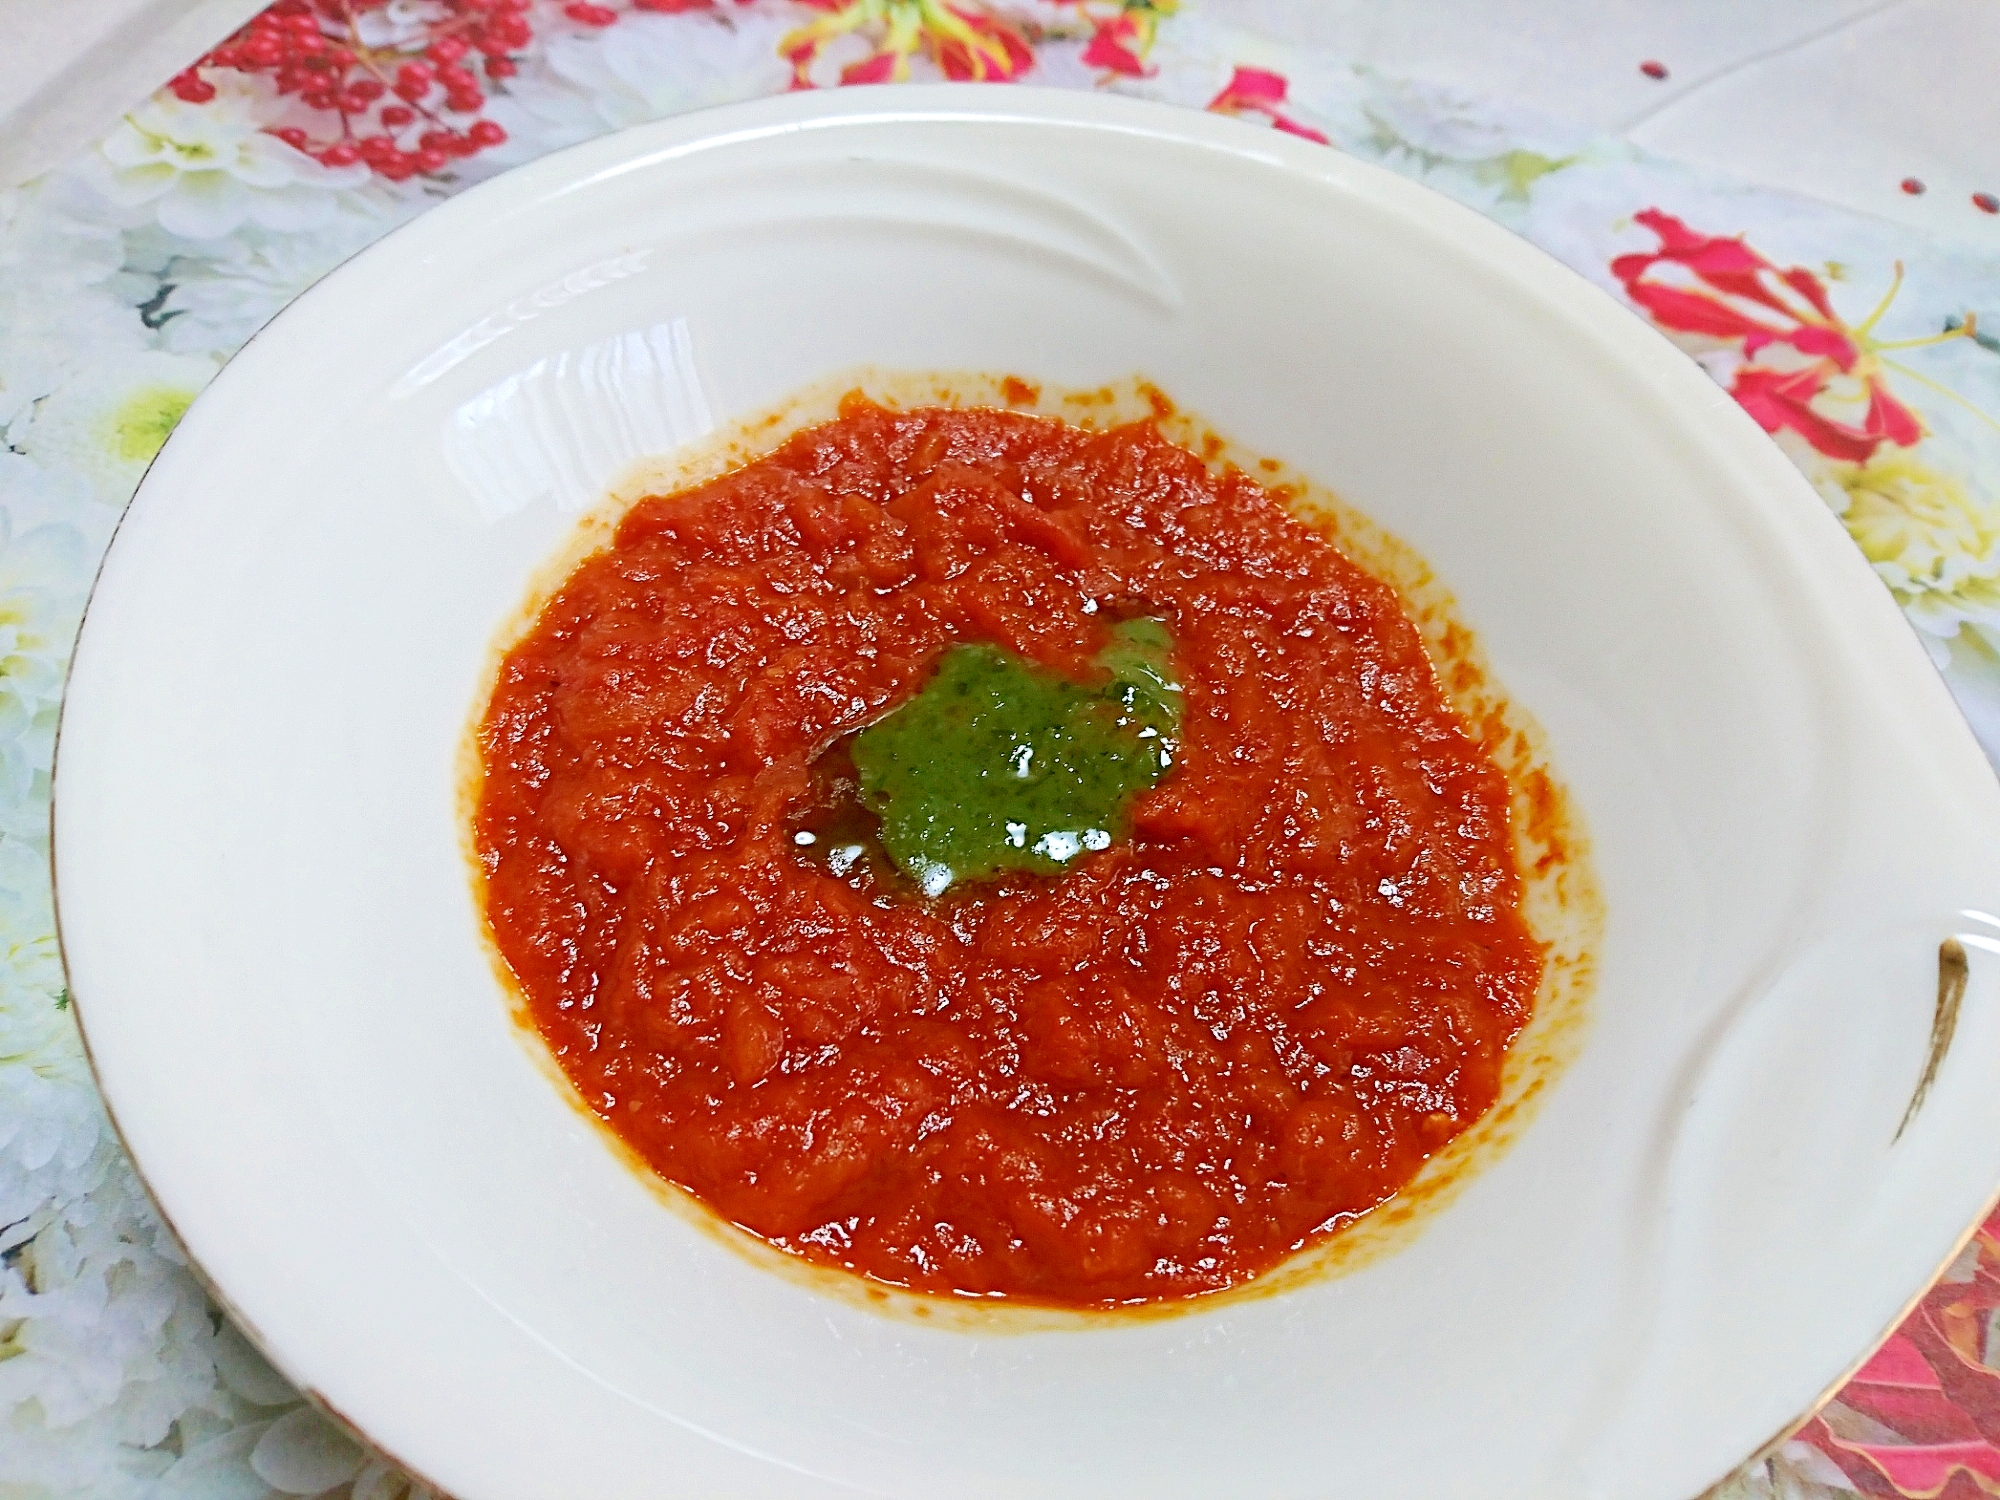 圧力鍋で作る水無しトマトスープ